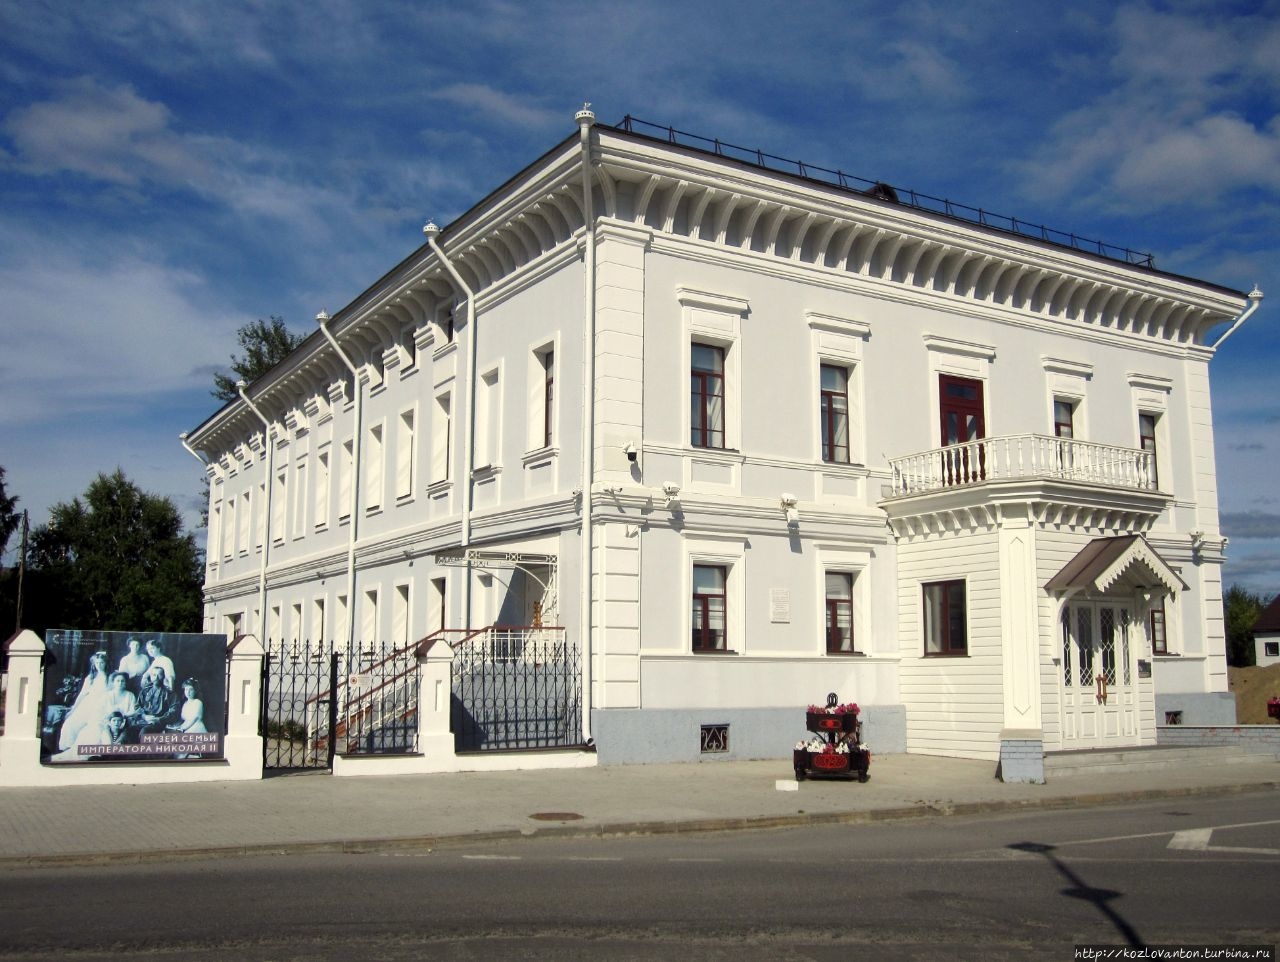 Рядом — резиденция Сибирских губернаторов (конец 18-го века). Здесь проживала царская семья во время ссылки. Ныне здесь музей царской семьи.